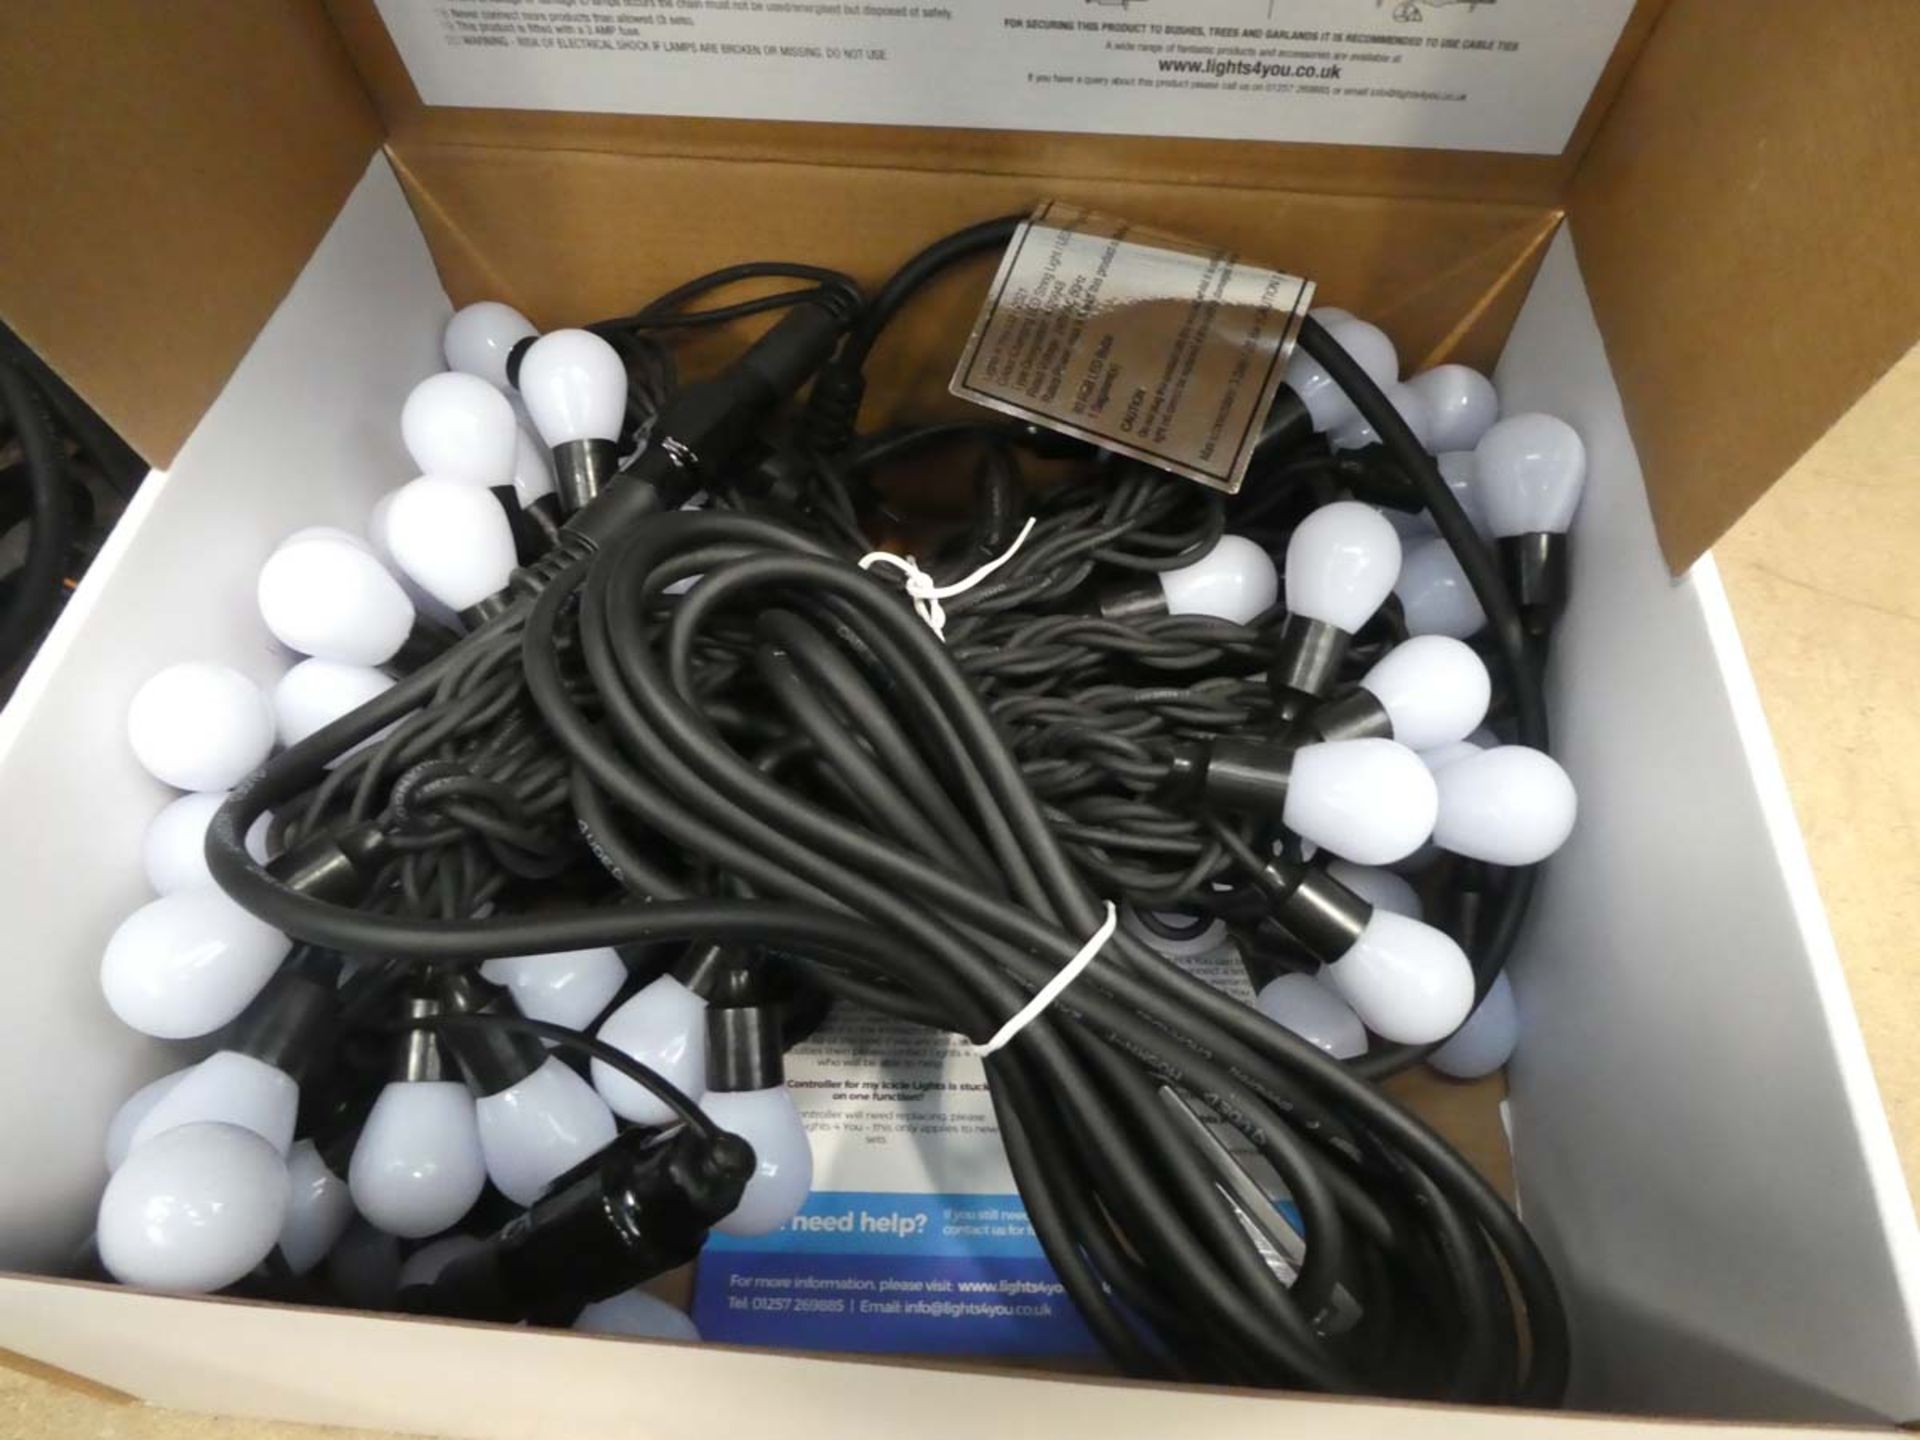 Box of LED vintage string lights, loose string lights, GLO globe light, LED colour changing - Image 2 of 2